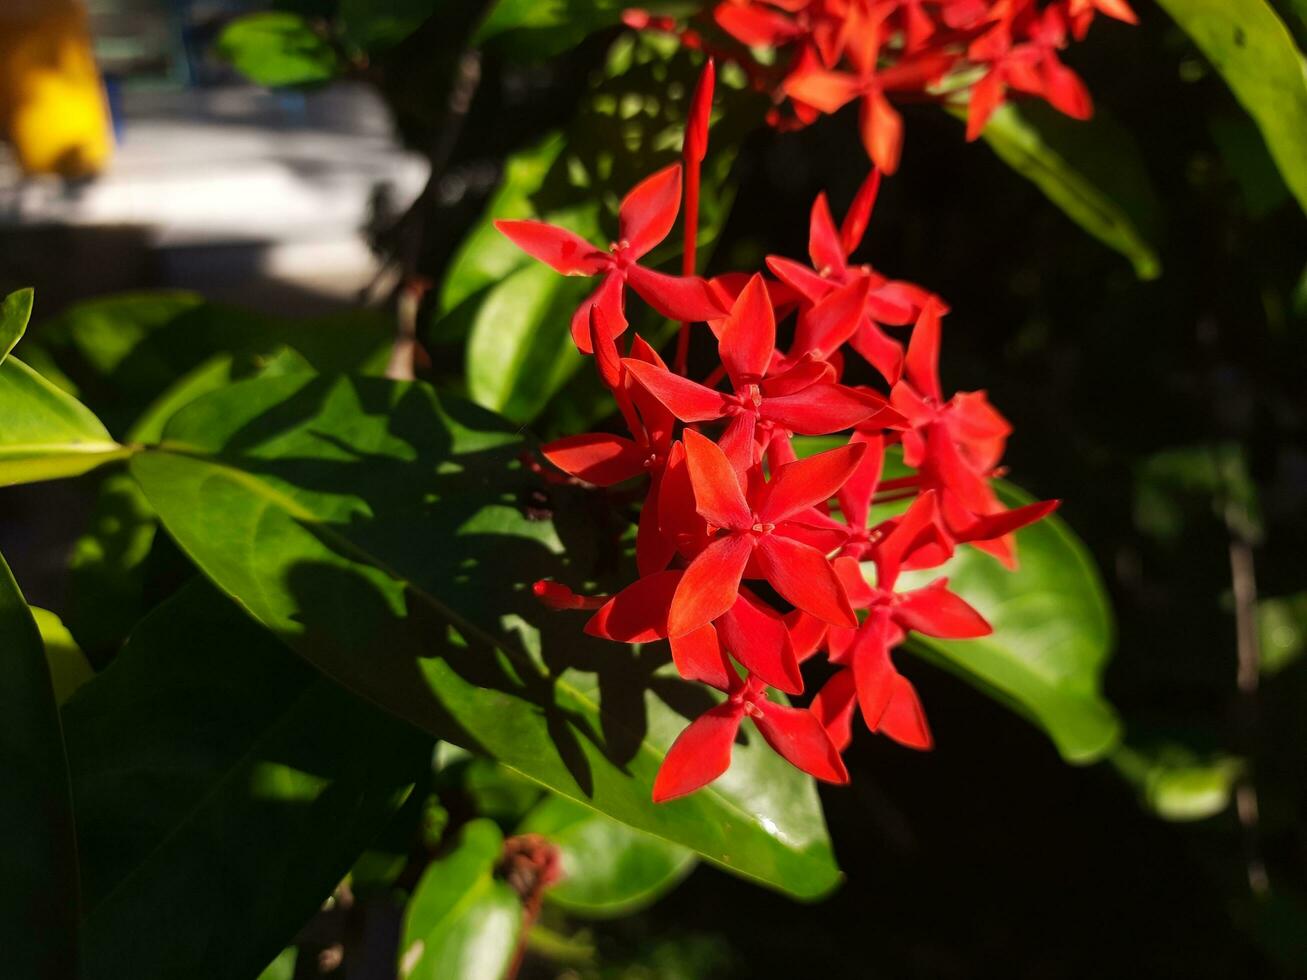 ixora blomma korsa formad fyra kronblad halsband med Sol ljus göra den utseende skön i röd. foto